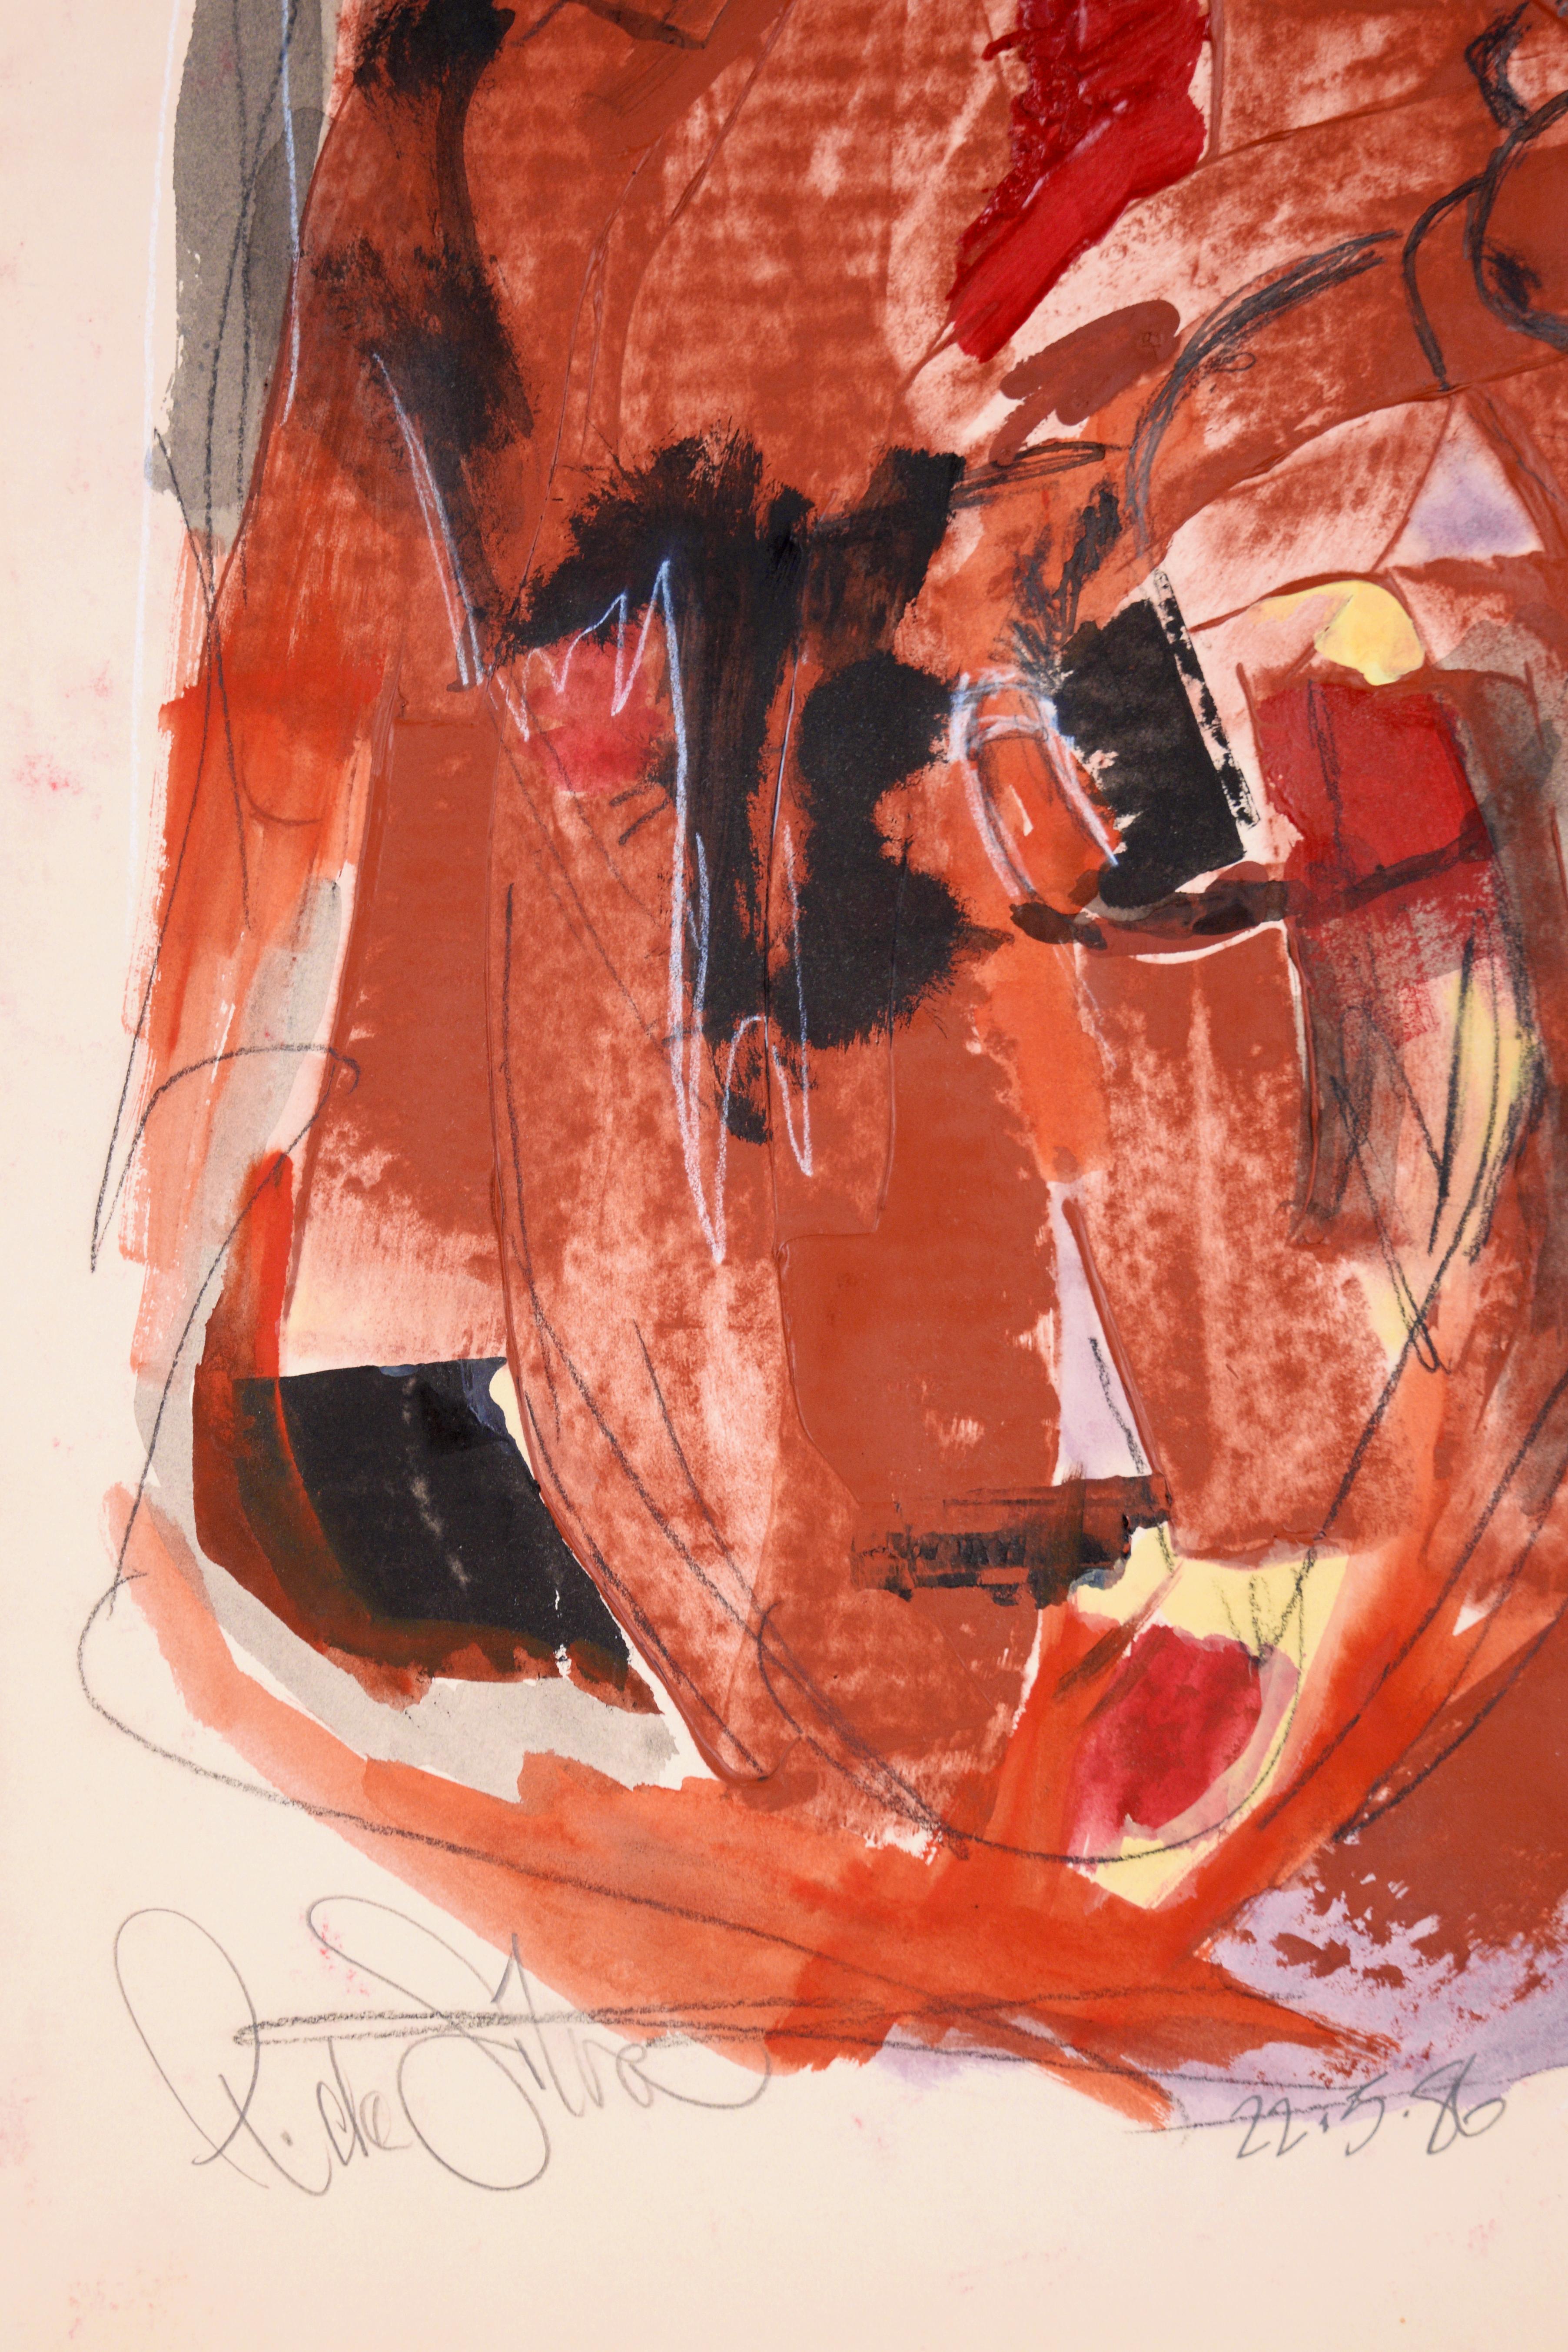 Alan Partridge's Bleeding Heart - Abstract Expressionism - Abstract Expressionist Mixed Media Art by Ricardo de Silva